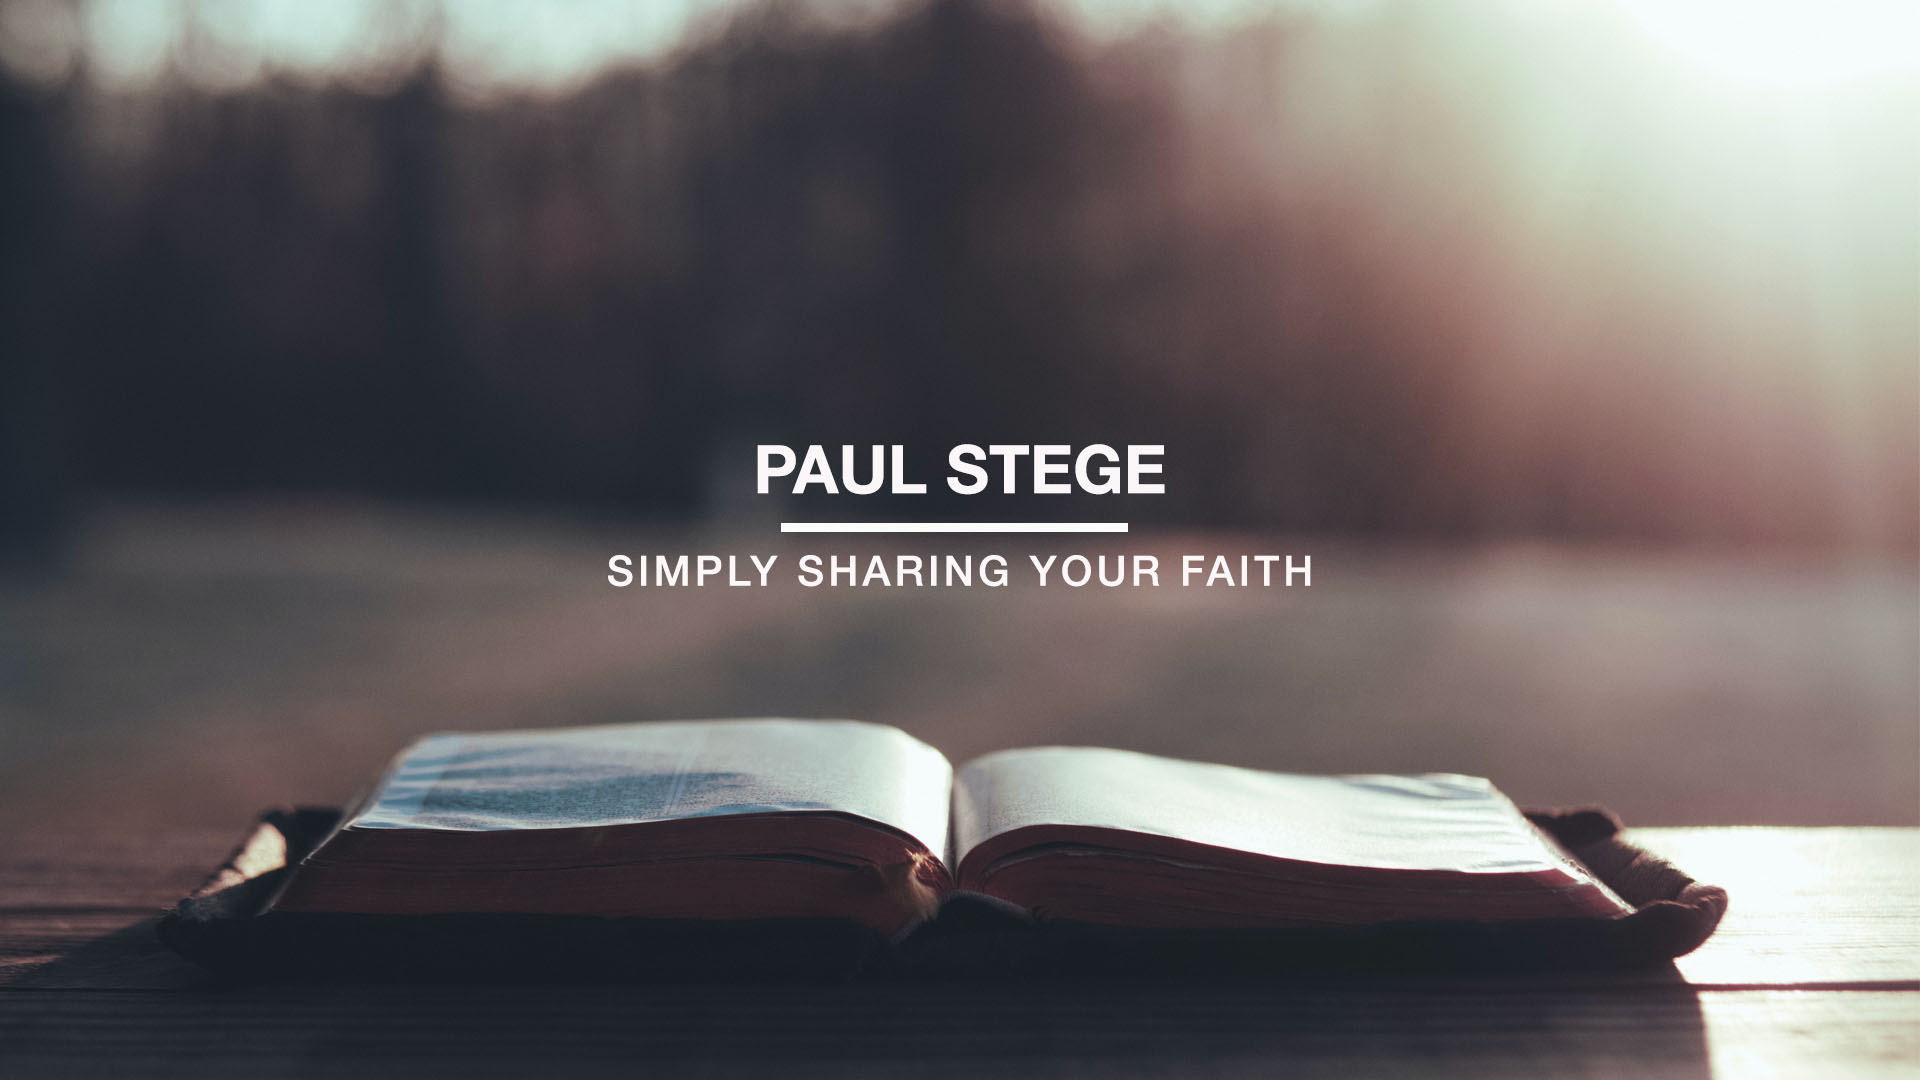 Paul Stege - Simply Sharing Your Faith